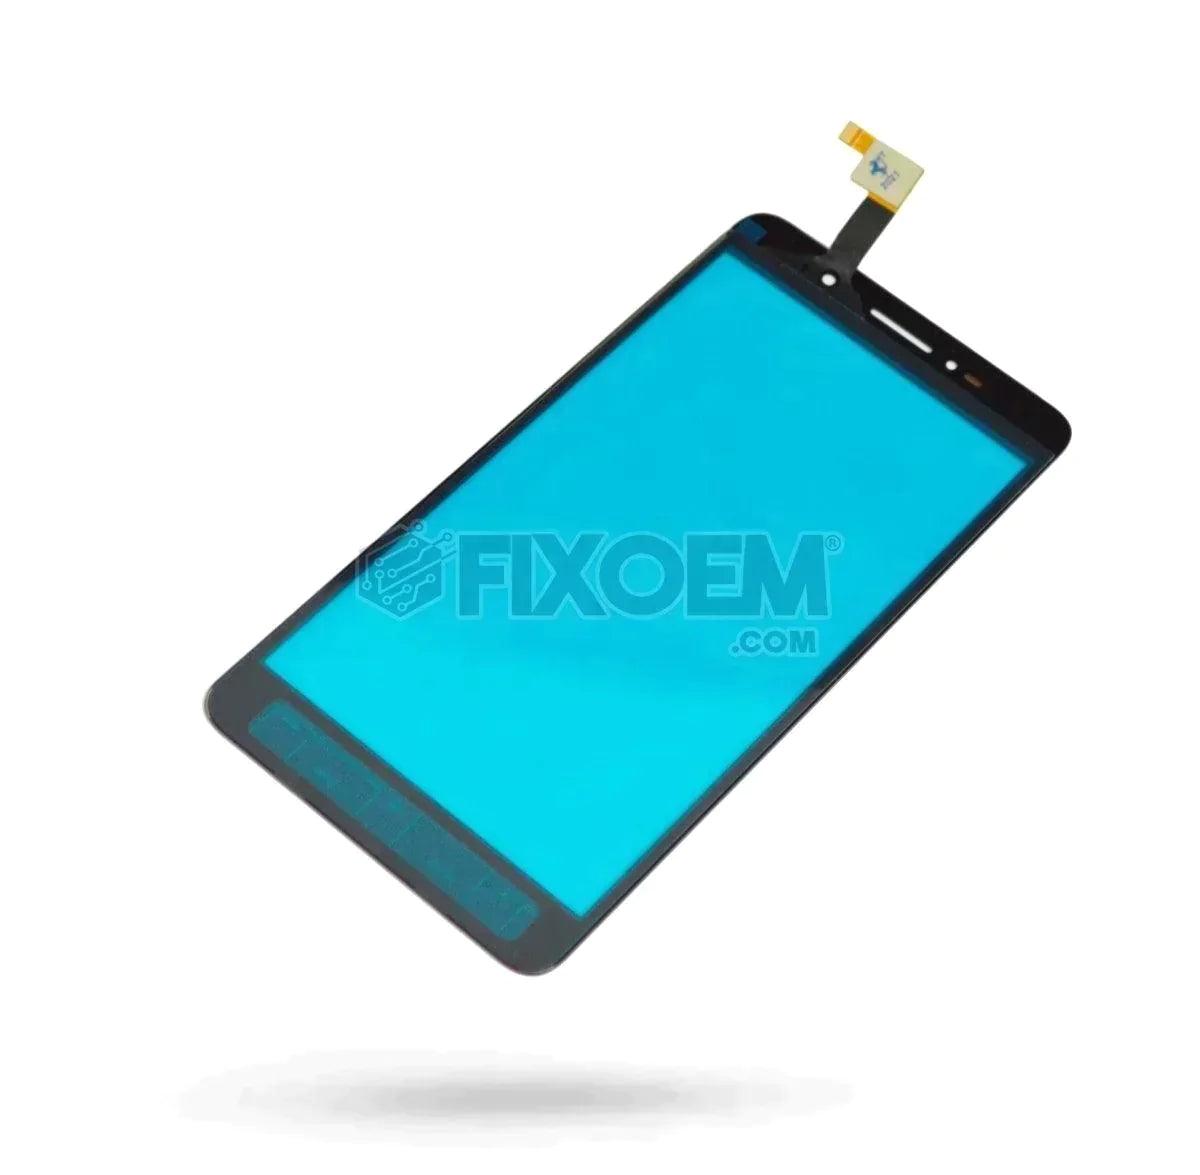 Touch Alcatel Pixi 4 6.0 8050 a solo $ 90.00 Refaccion y puestos celulares, refurbish y microelectronica.- FixOEM